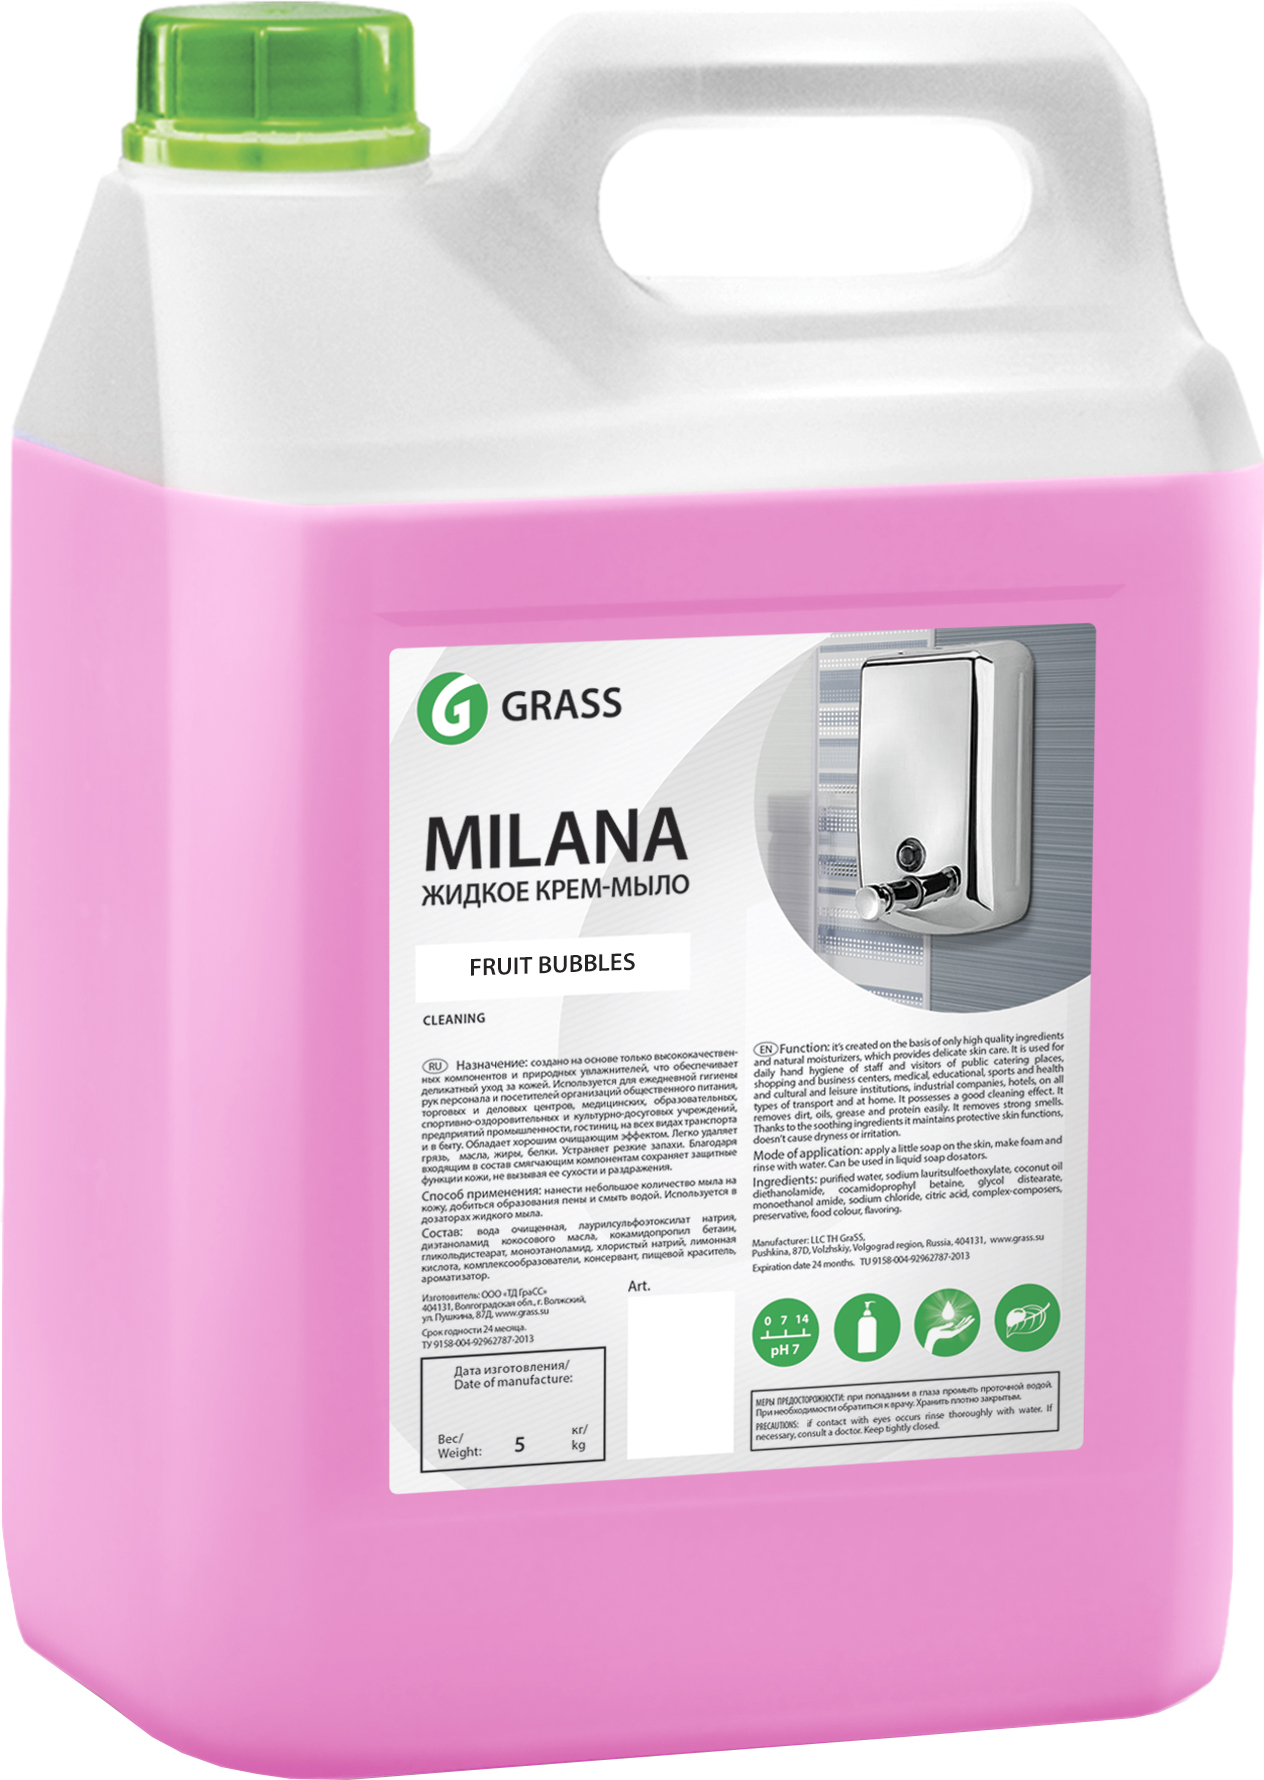 Grass Milana Крем-мыло в ассортименте 5 л